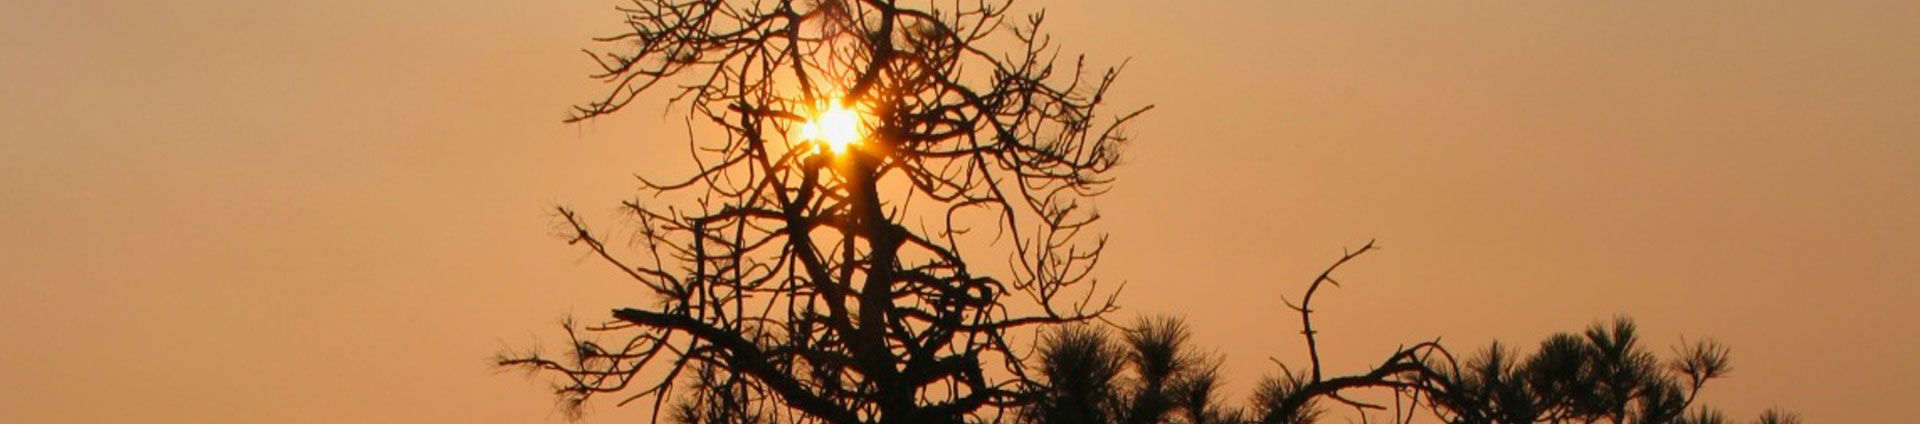 धुएं में पेड़ के माध्यम से चमकते सूरज की हेडर छवि